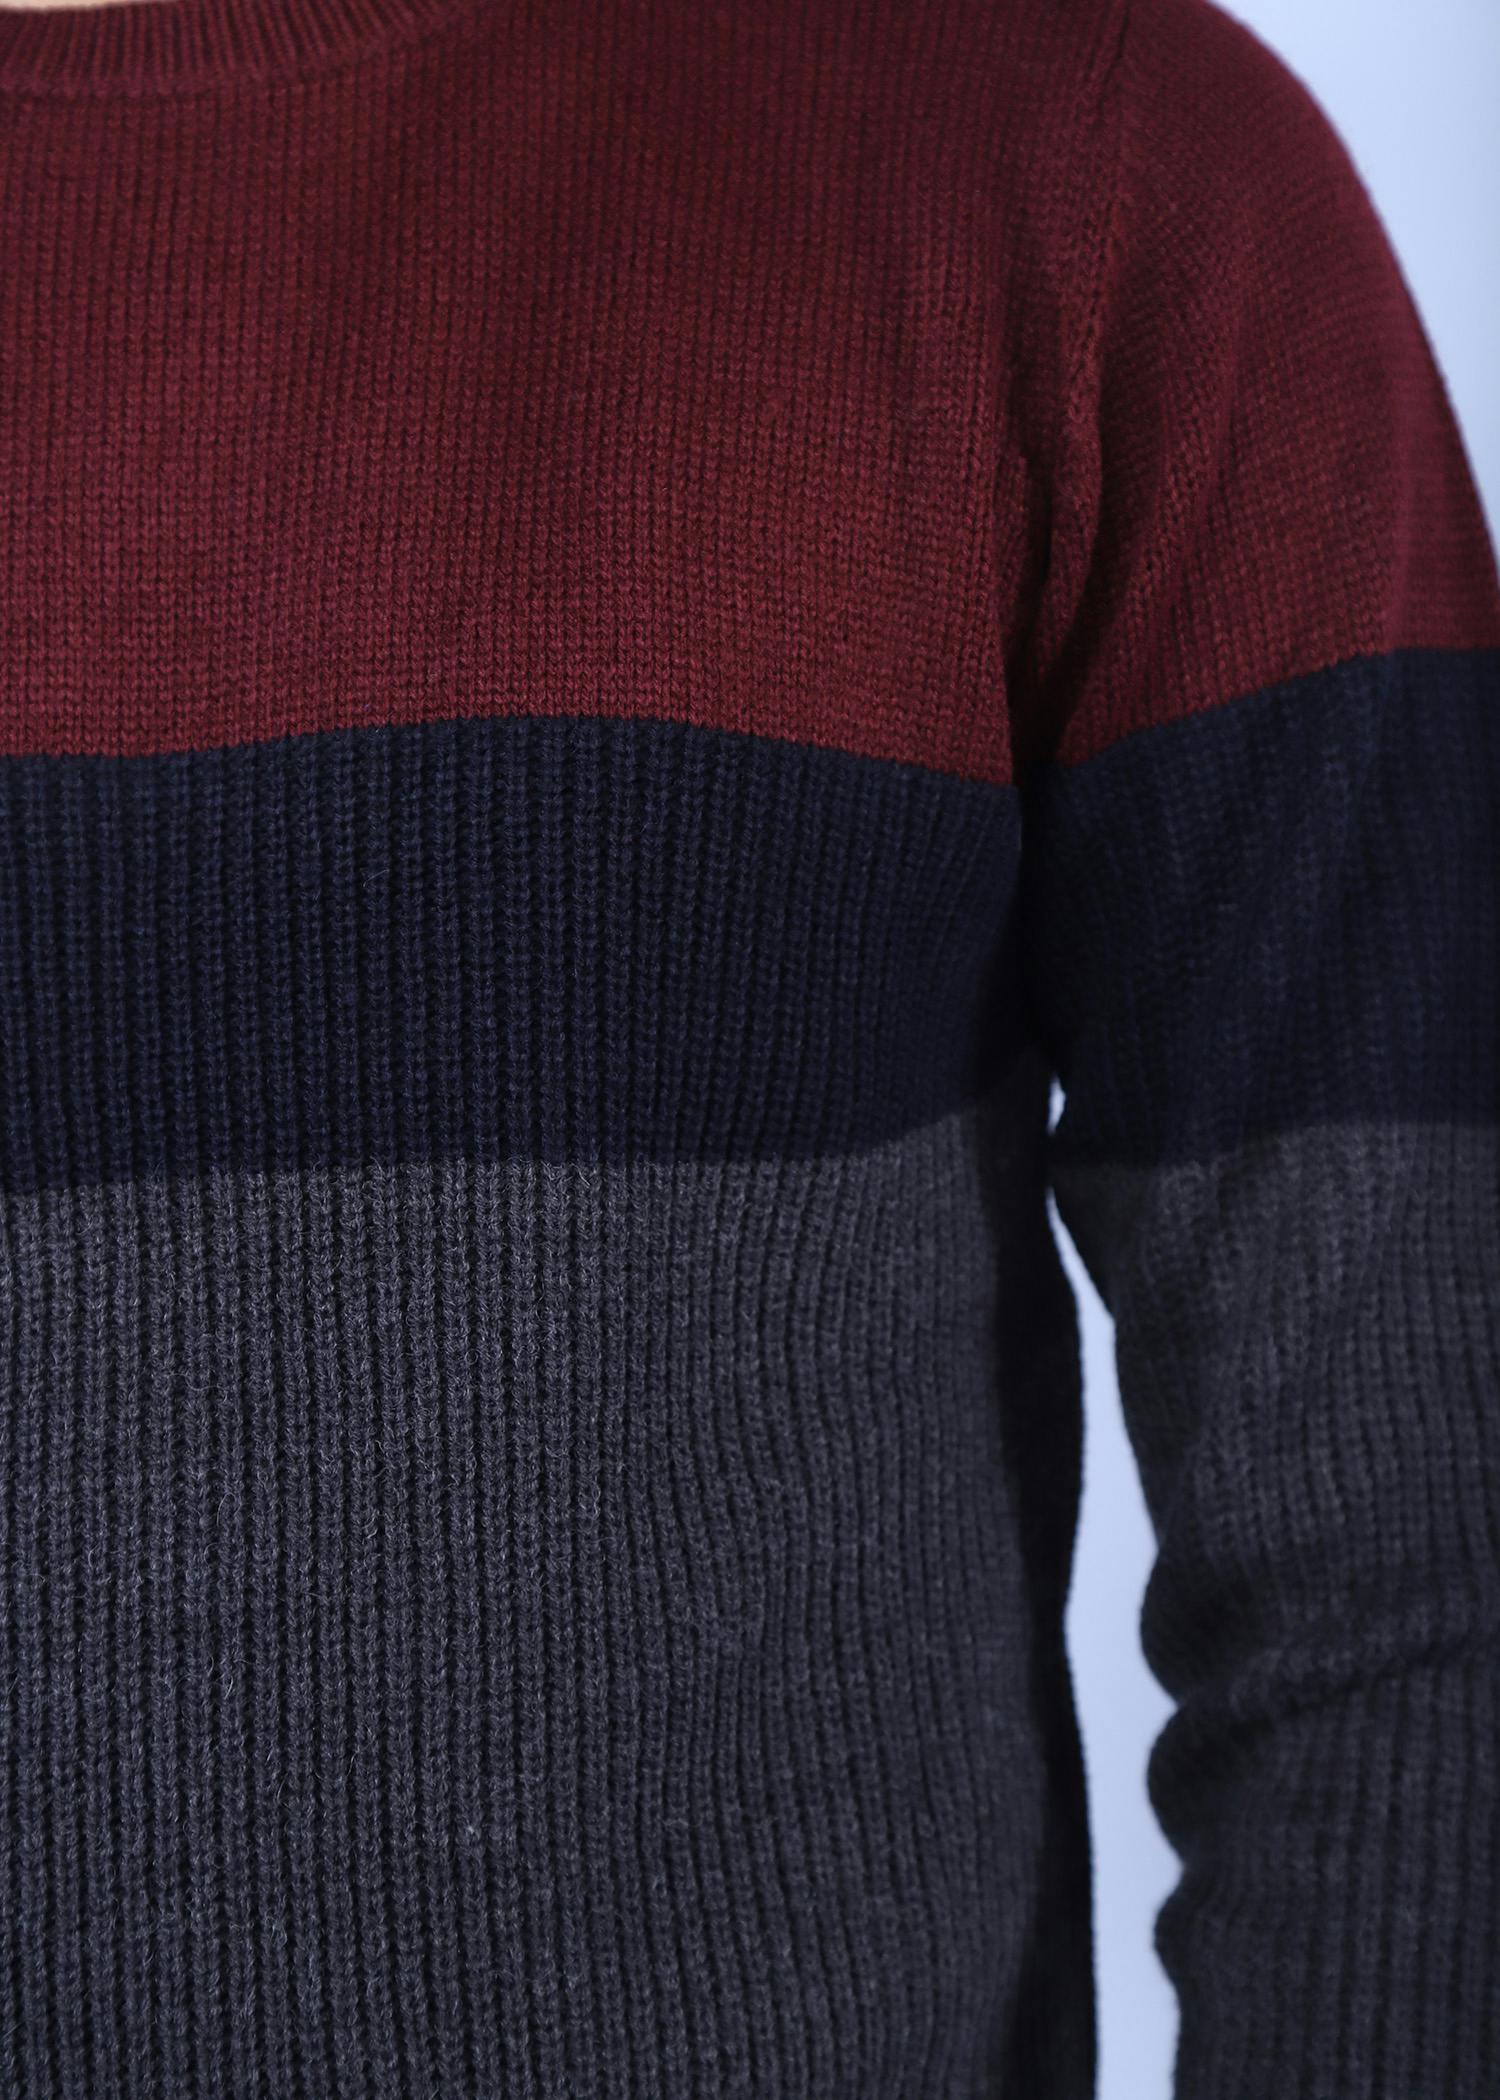 hillstar iv sweater bordeaux color close front view